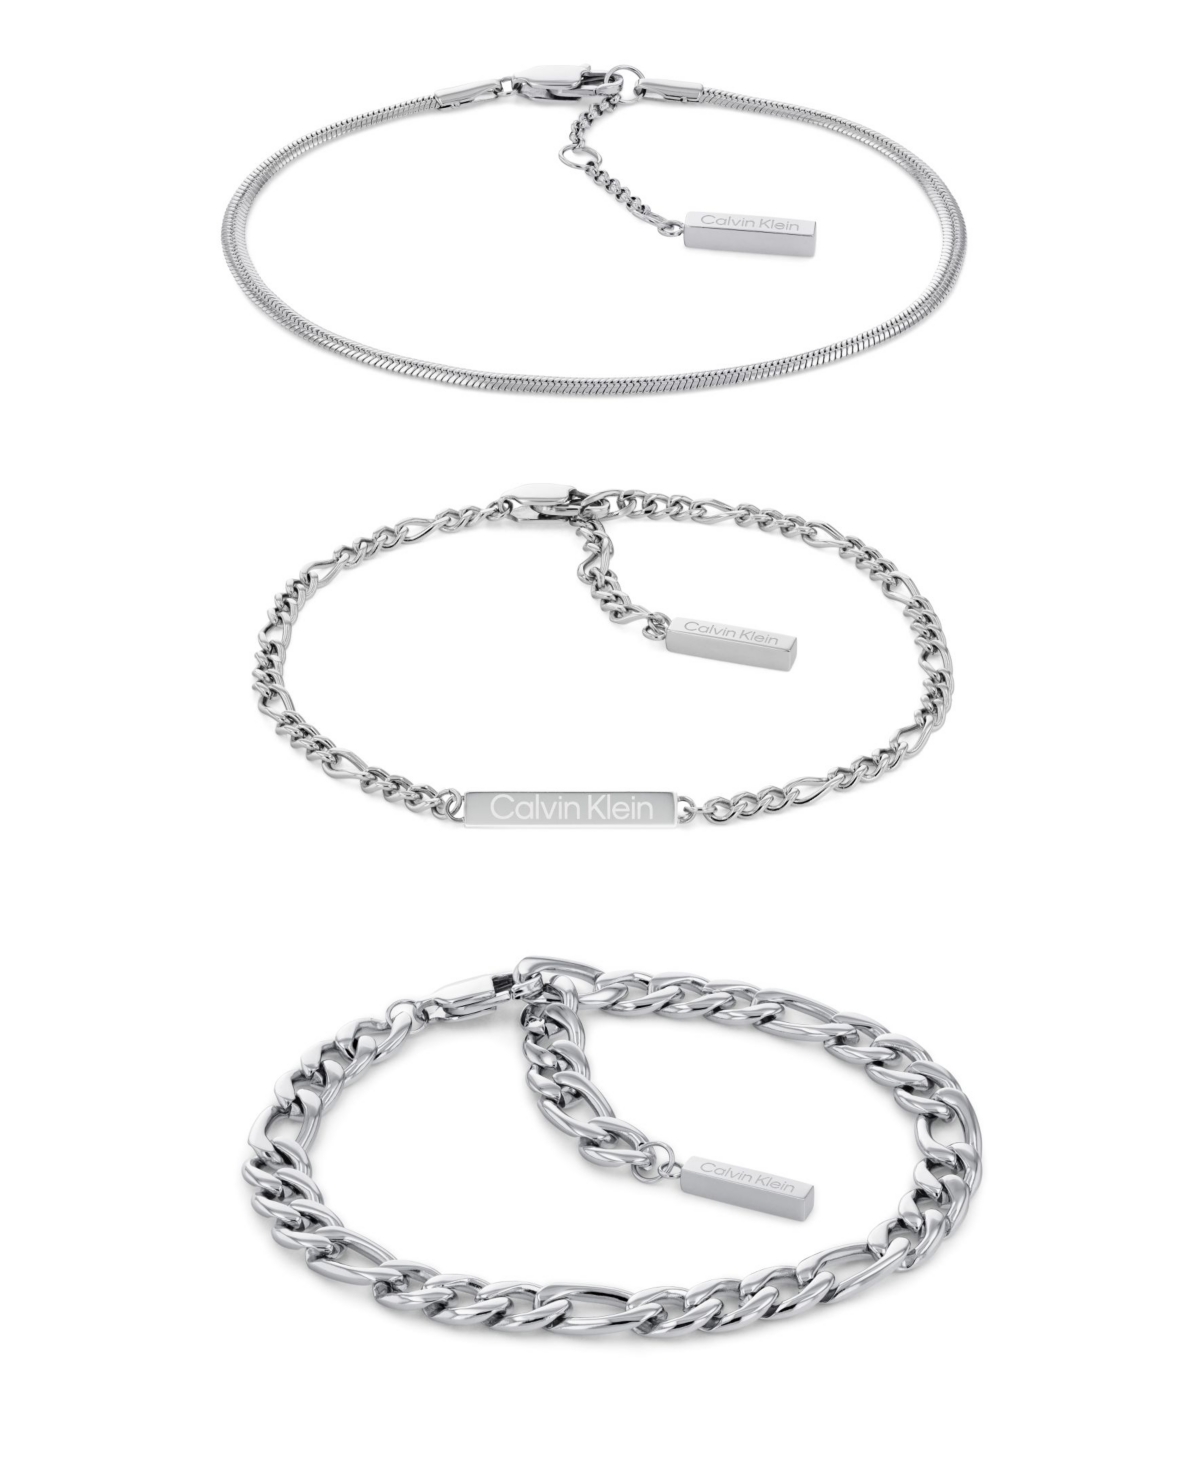 Women's Stainless Steel Bracelet Set - Silver-tone